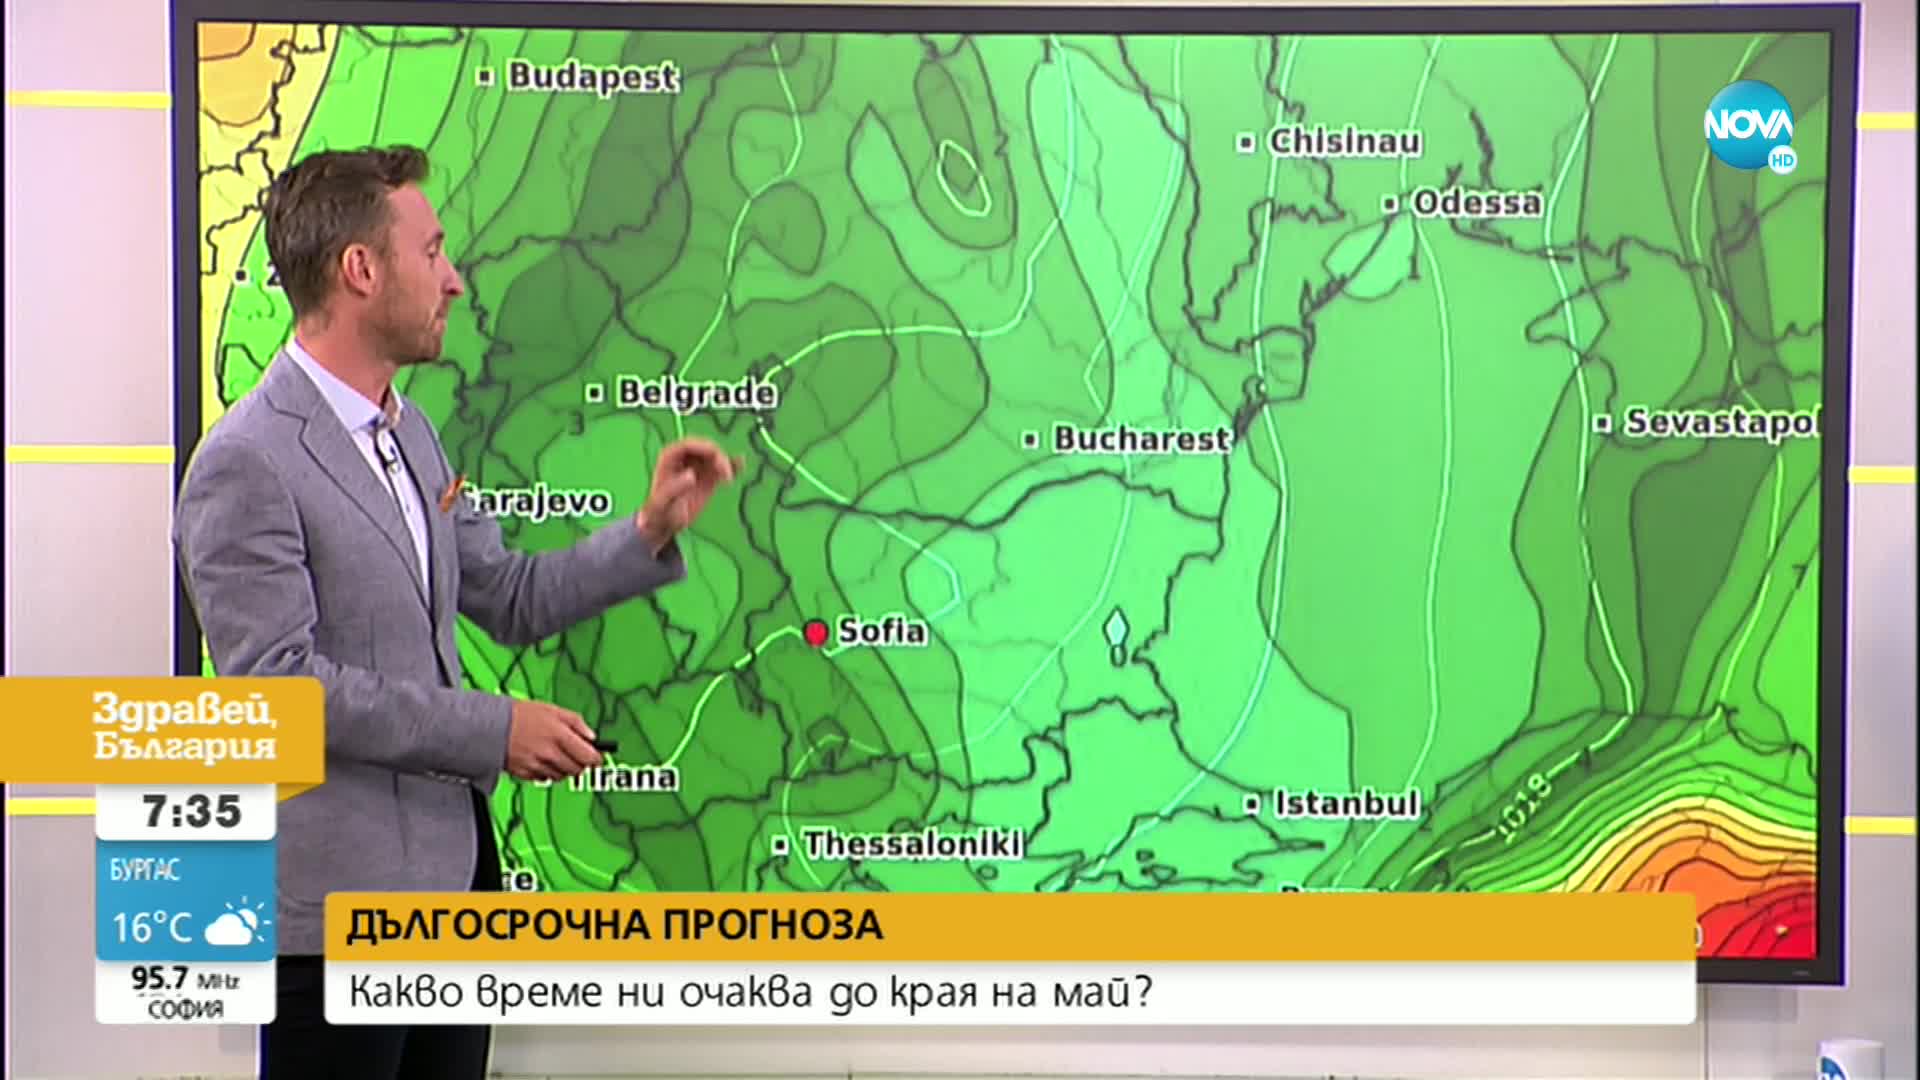 ВРЕМЕТО: Бури с градушки в някои райони на България